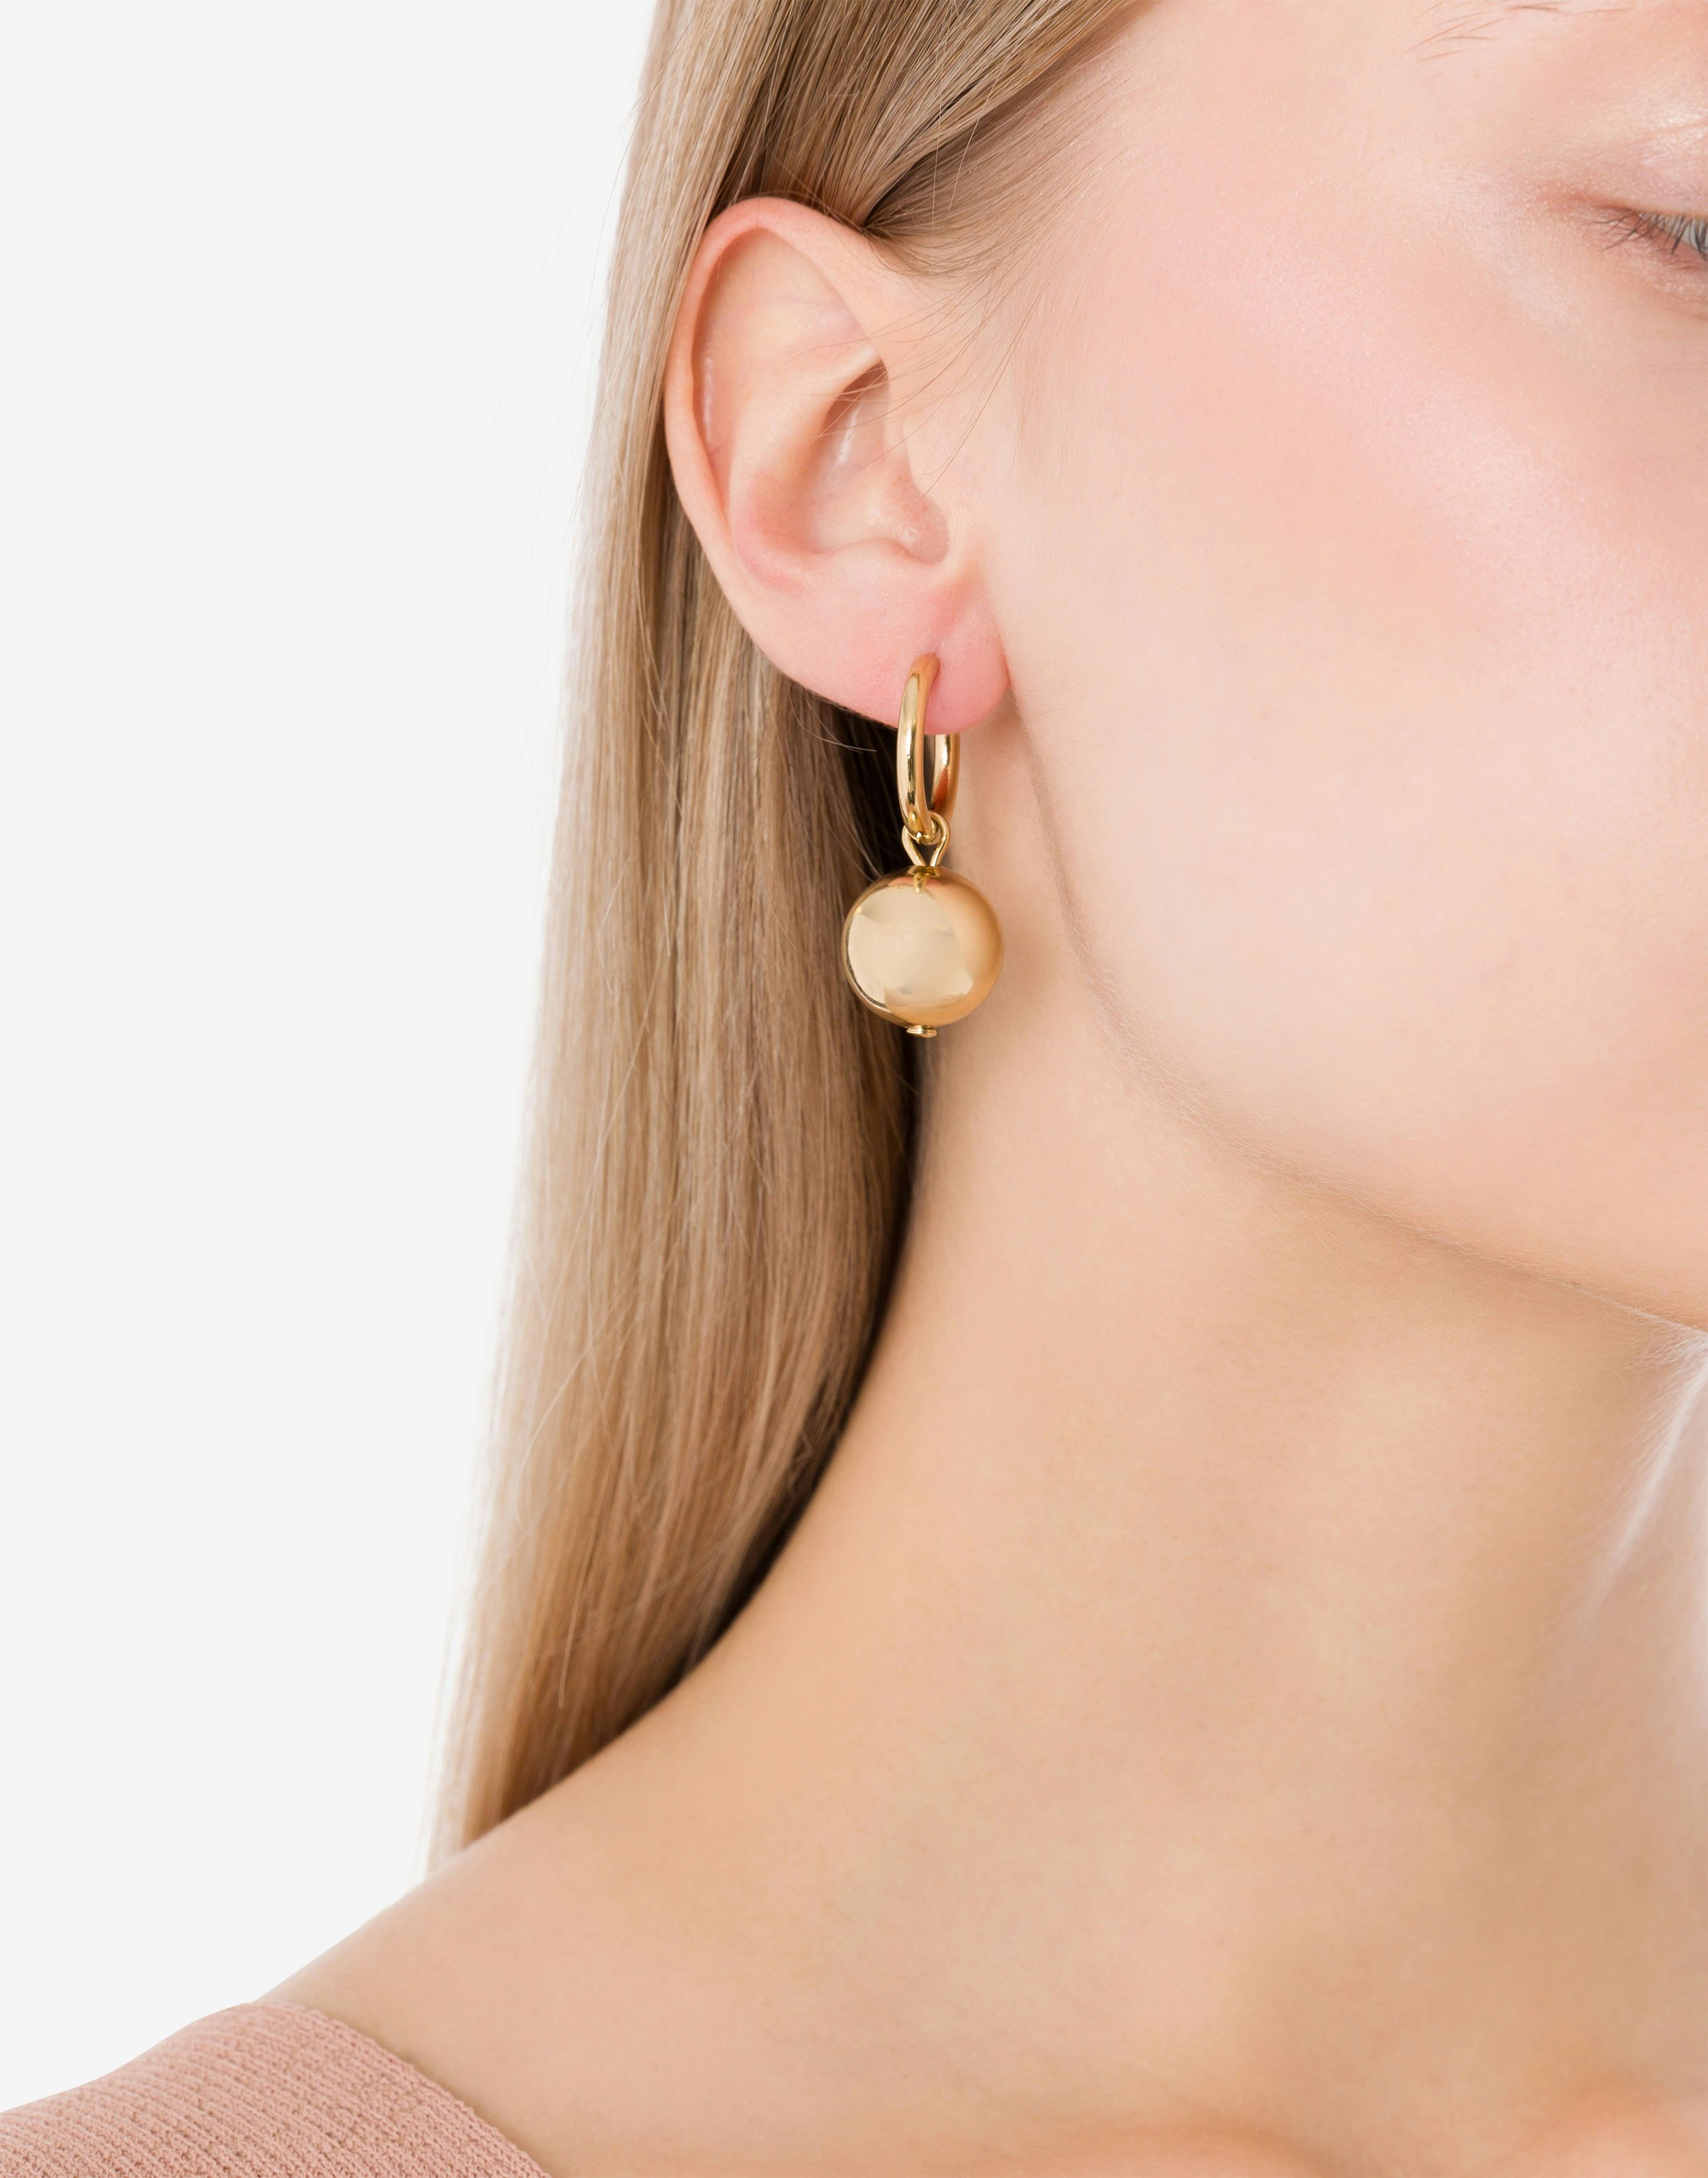 Boucle d’oreille unique piercing